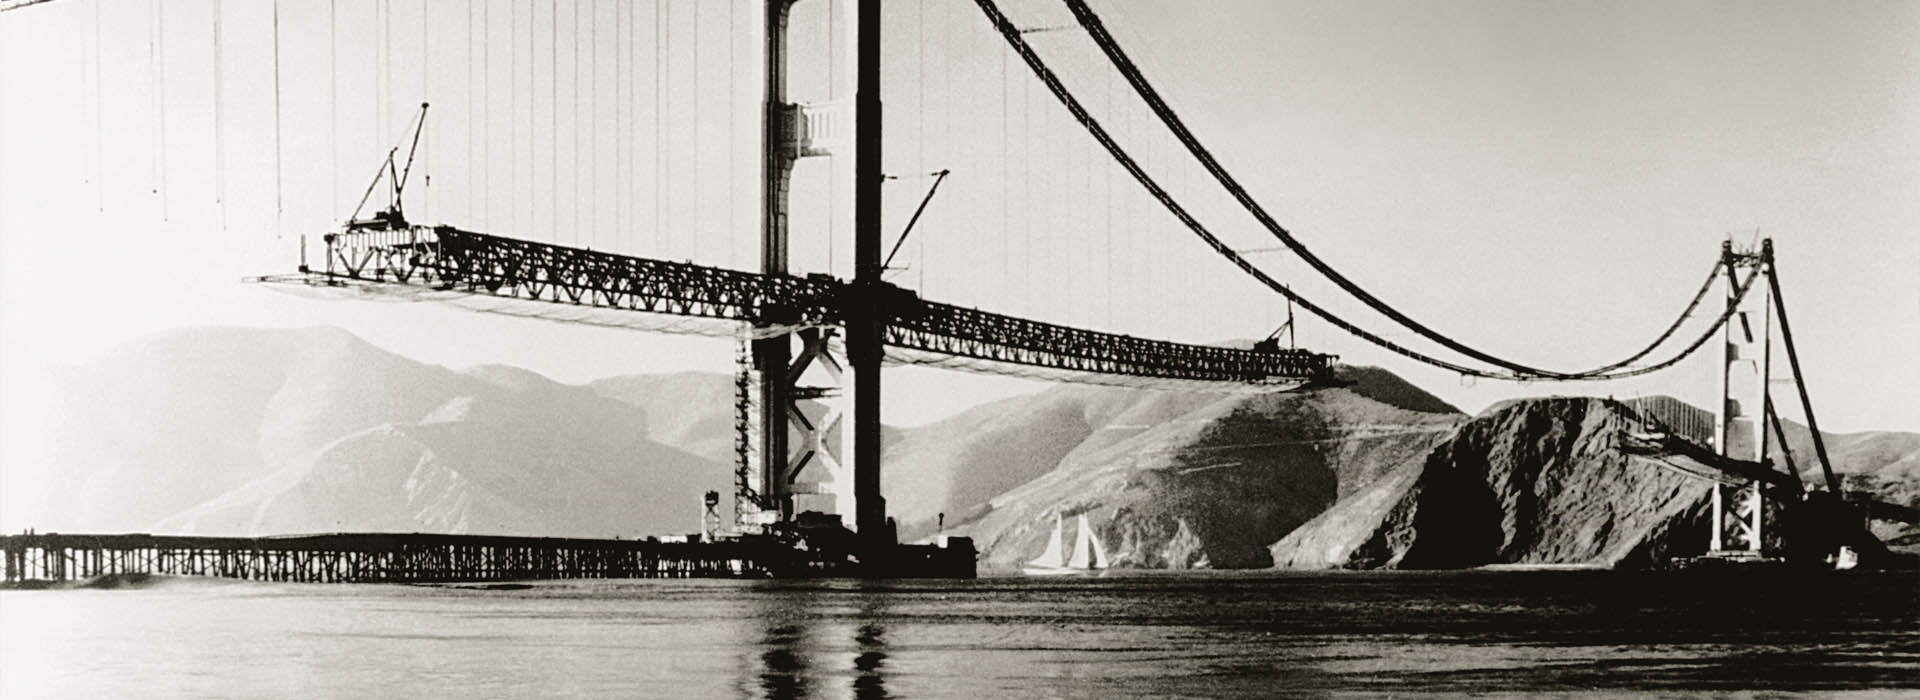 Golden Gate Bridge • San Francisco, California